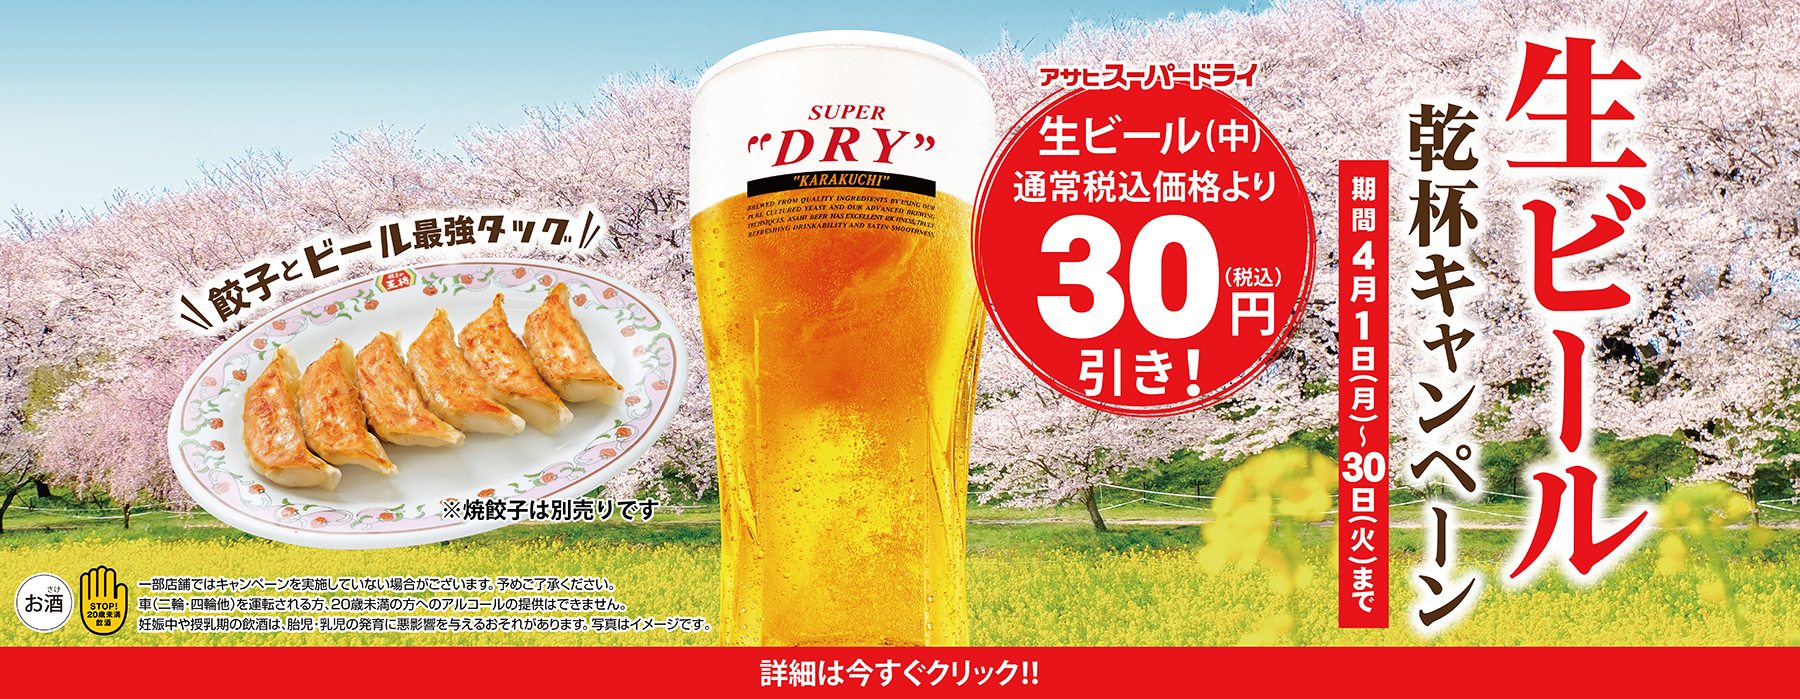 【4月1日〜4月30日】生ビール乾杯キャンペーン開催!!